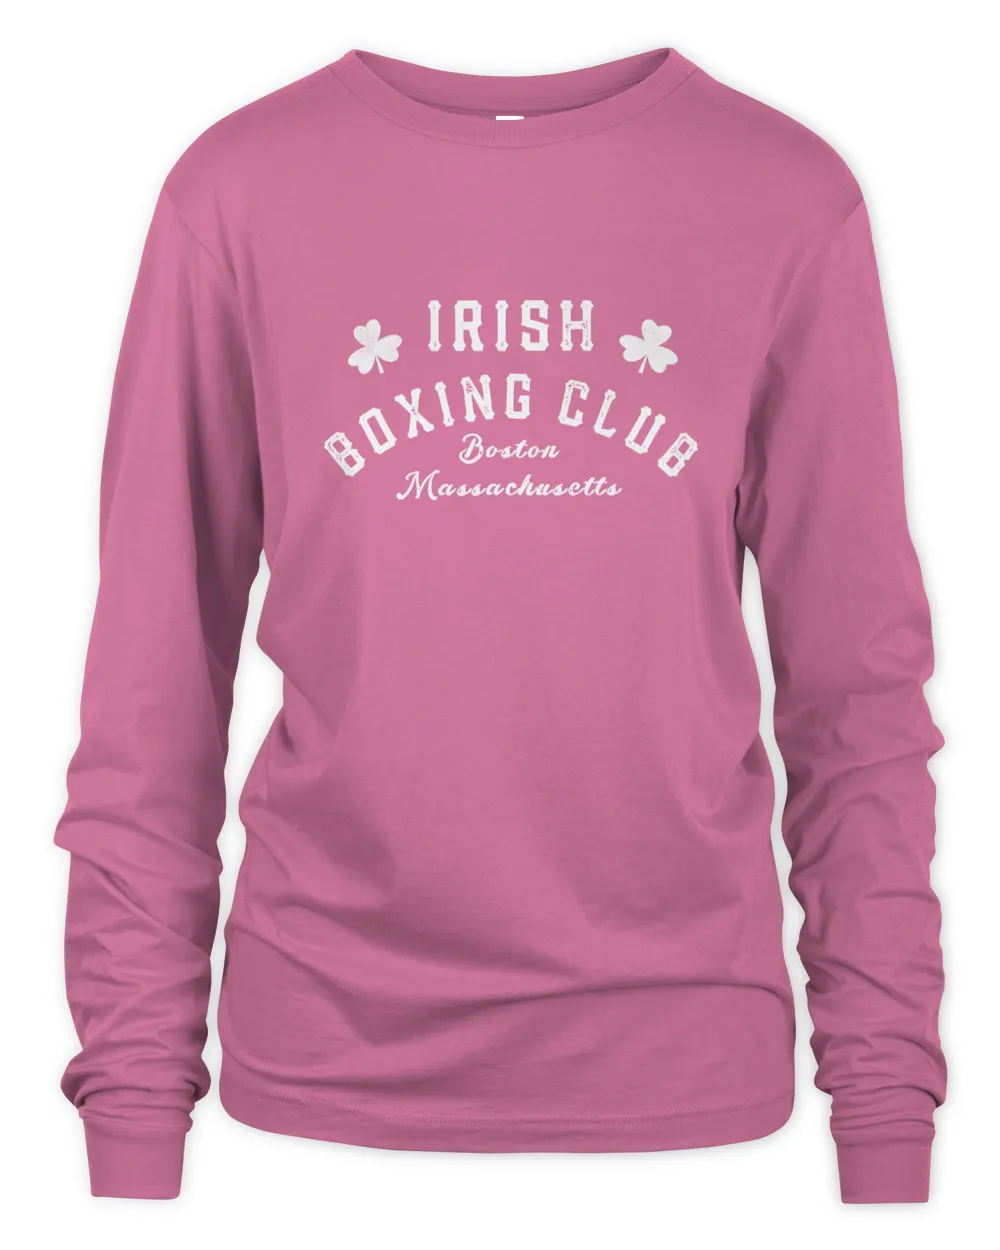 Great Irish Boxing Shirt Men Club Boston Fighting Tee Pub